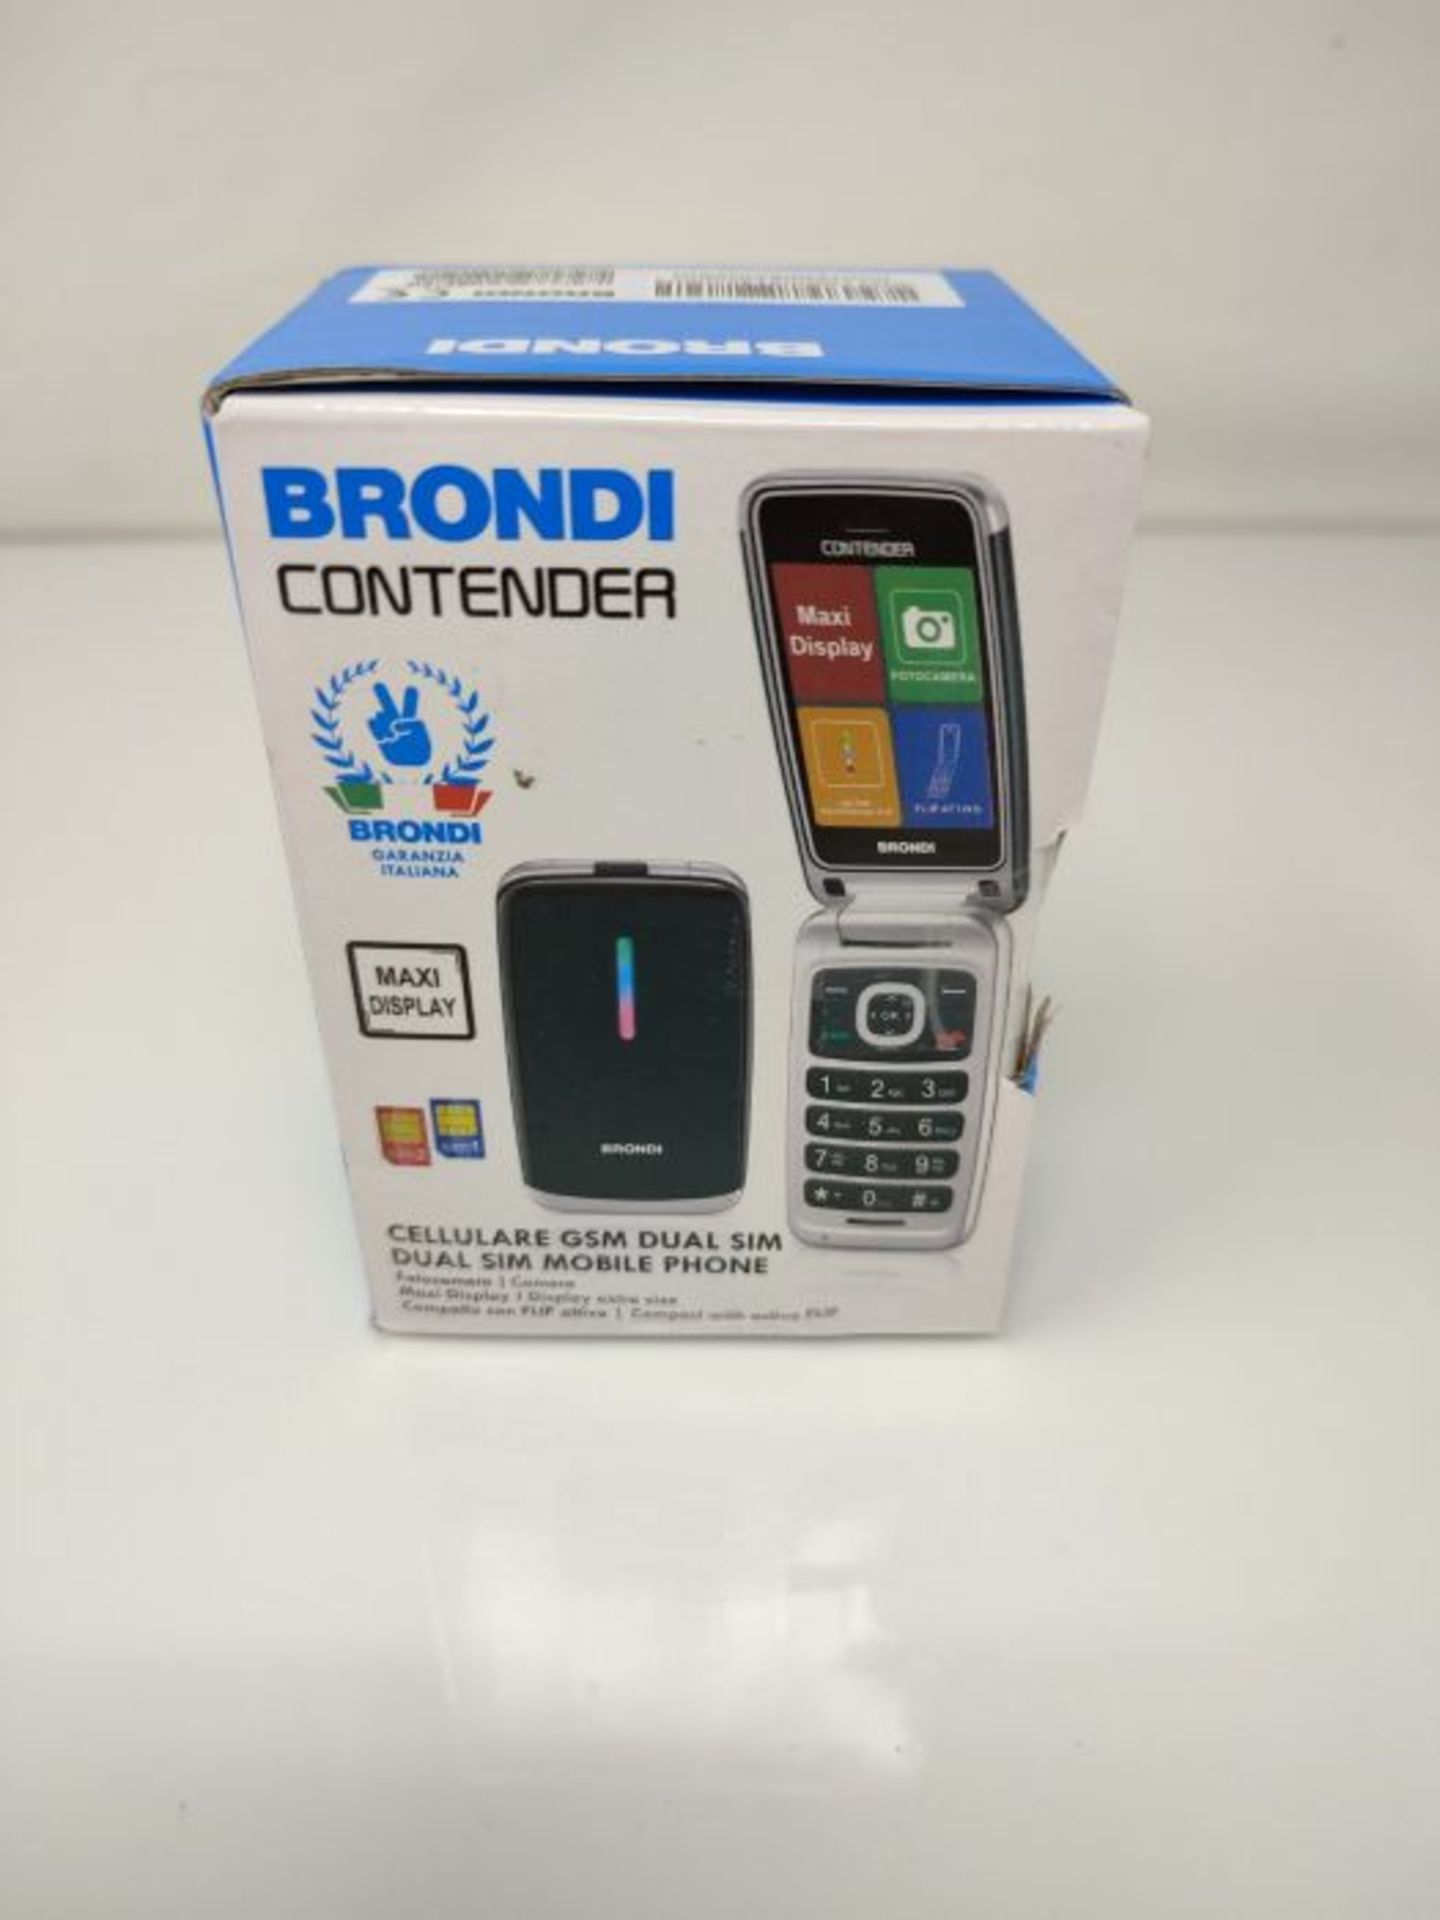 Brondi Contender Telefono Cellulare GSM DUAL SIM con Tasti Grandi, Nero - Image 2 of 3